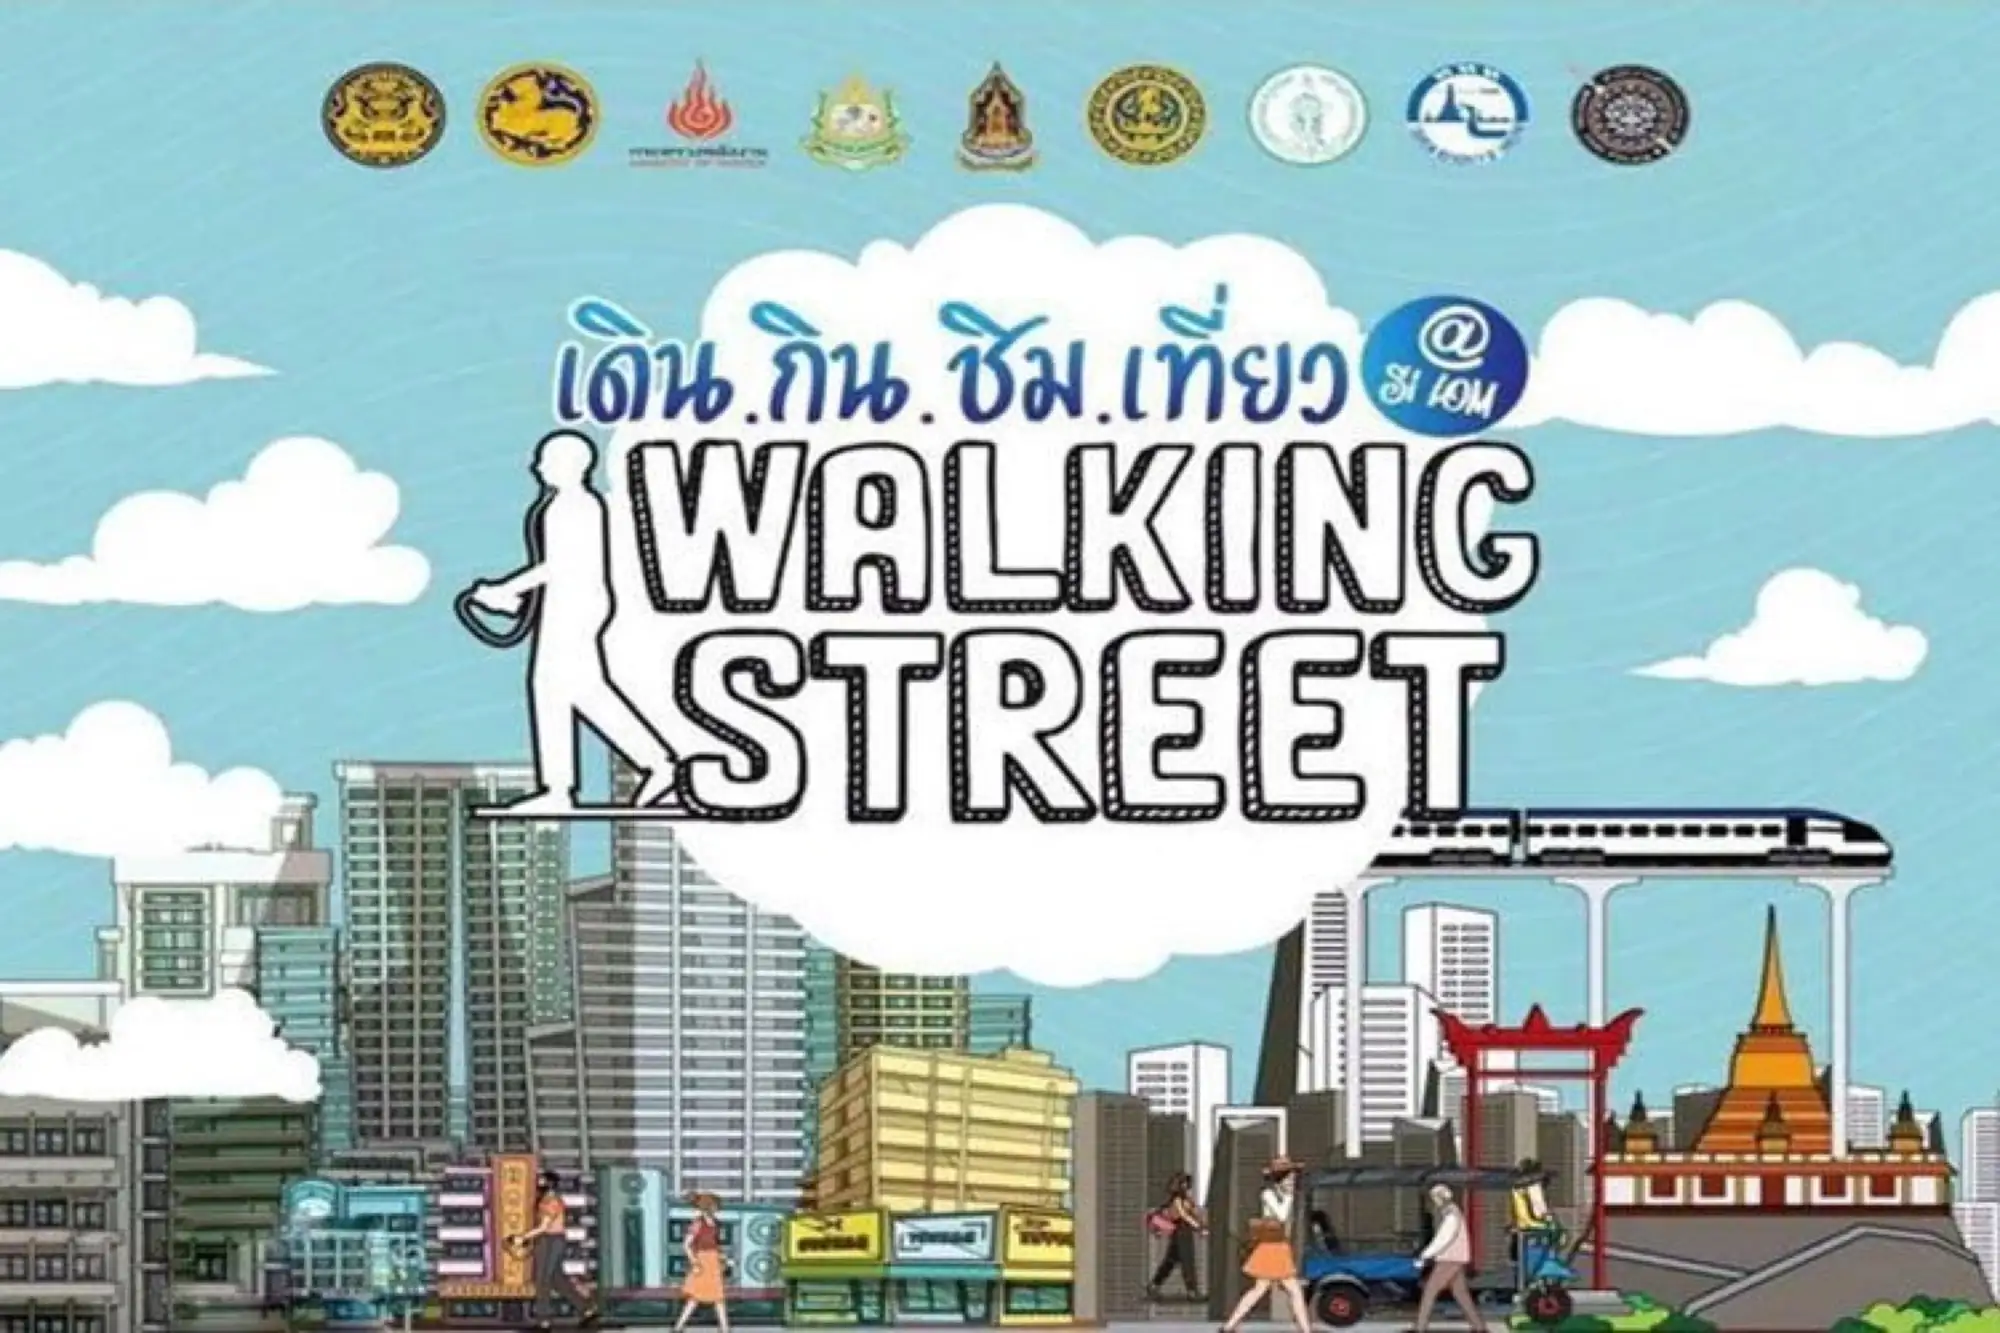 曼谷是隆路步行街活動將展開至五月